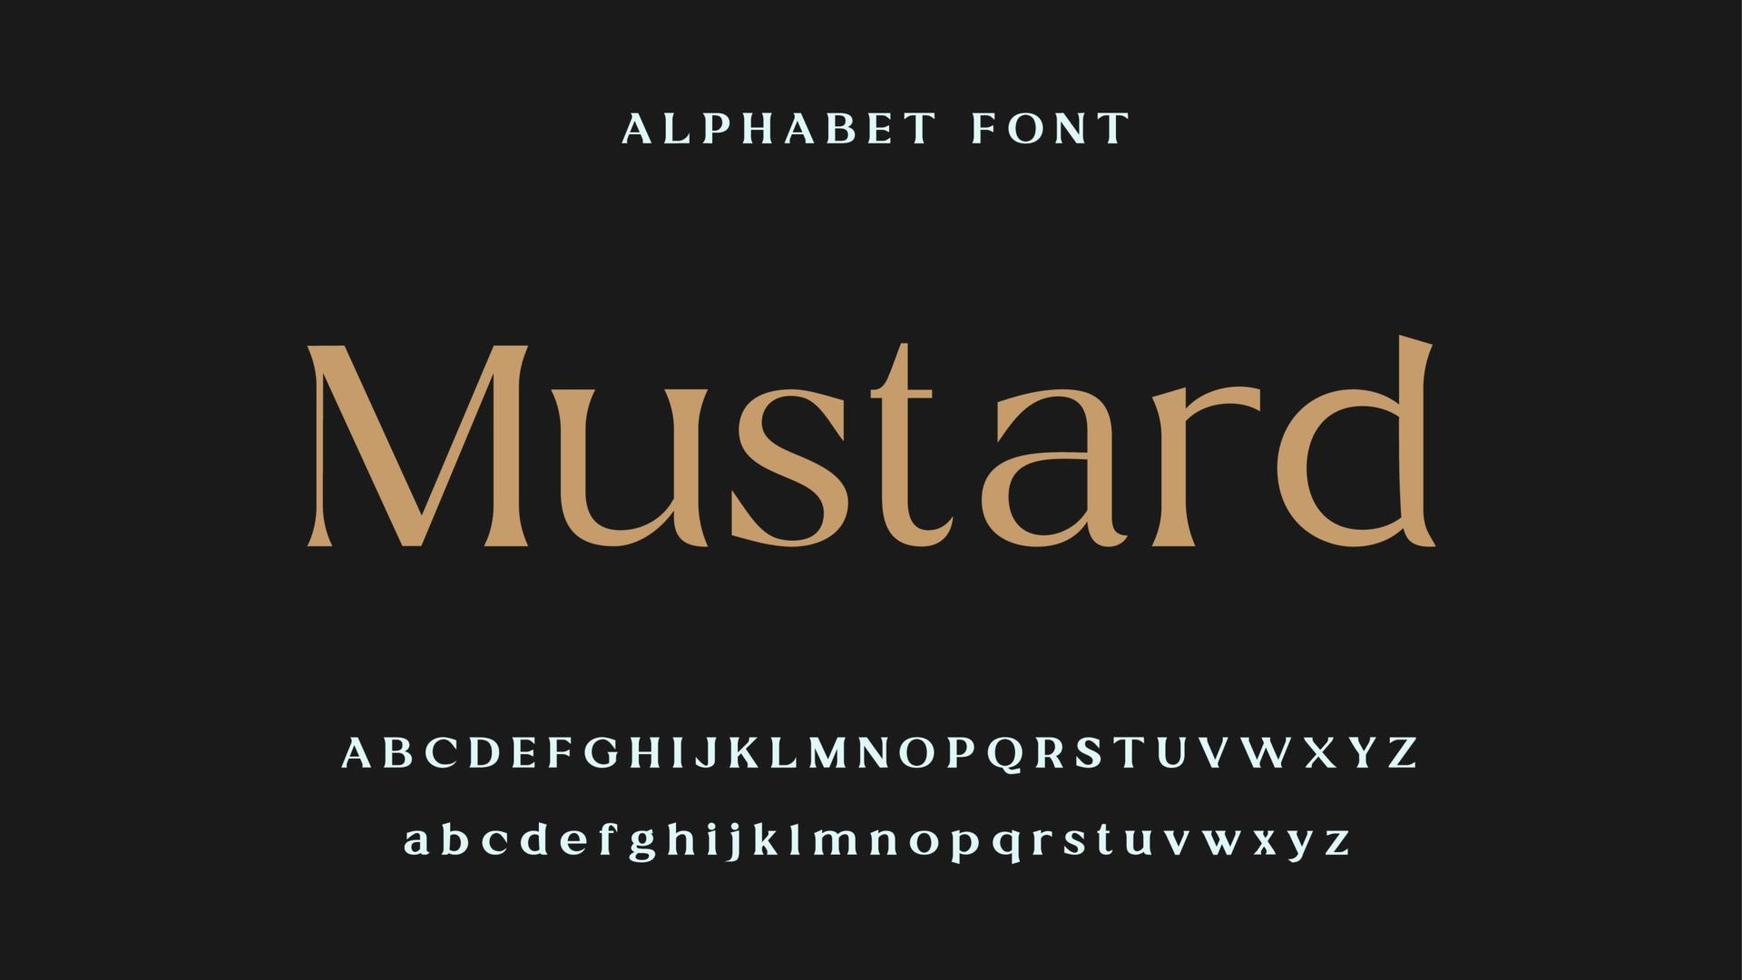 police élégante de lettres d'alphabet. typographie de luxe classique police serif décorative vintage rétro vecteur